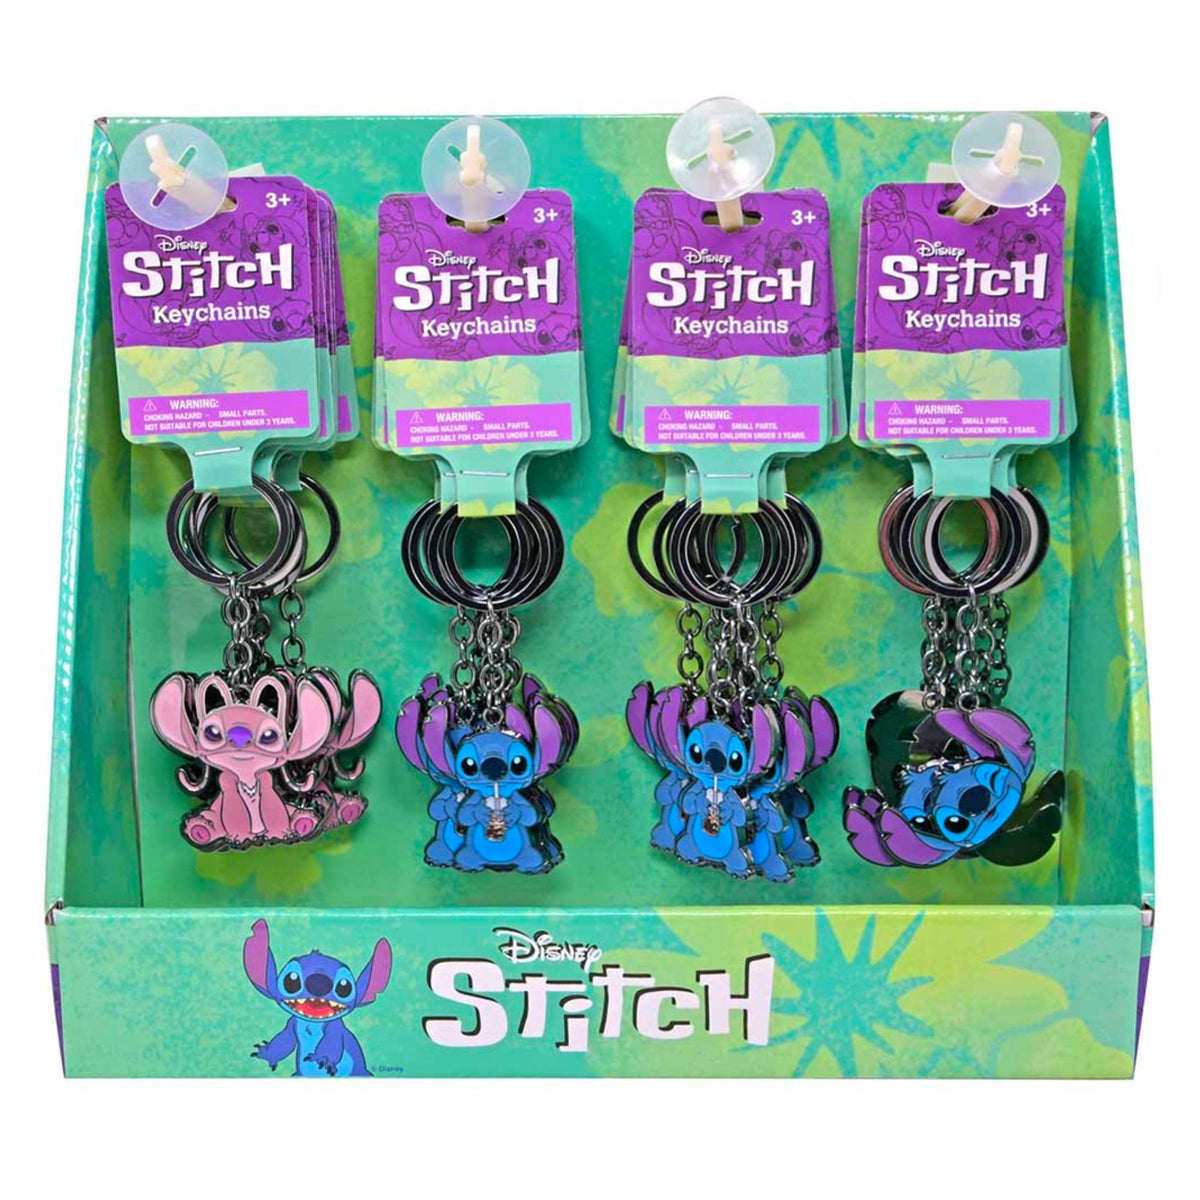 Disney Stitch Keychain - Stitch with Drink